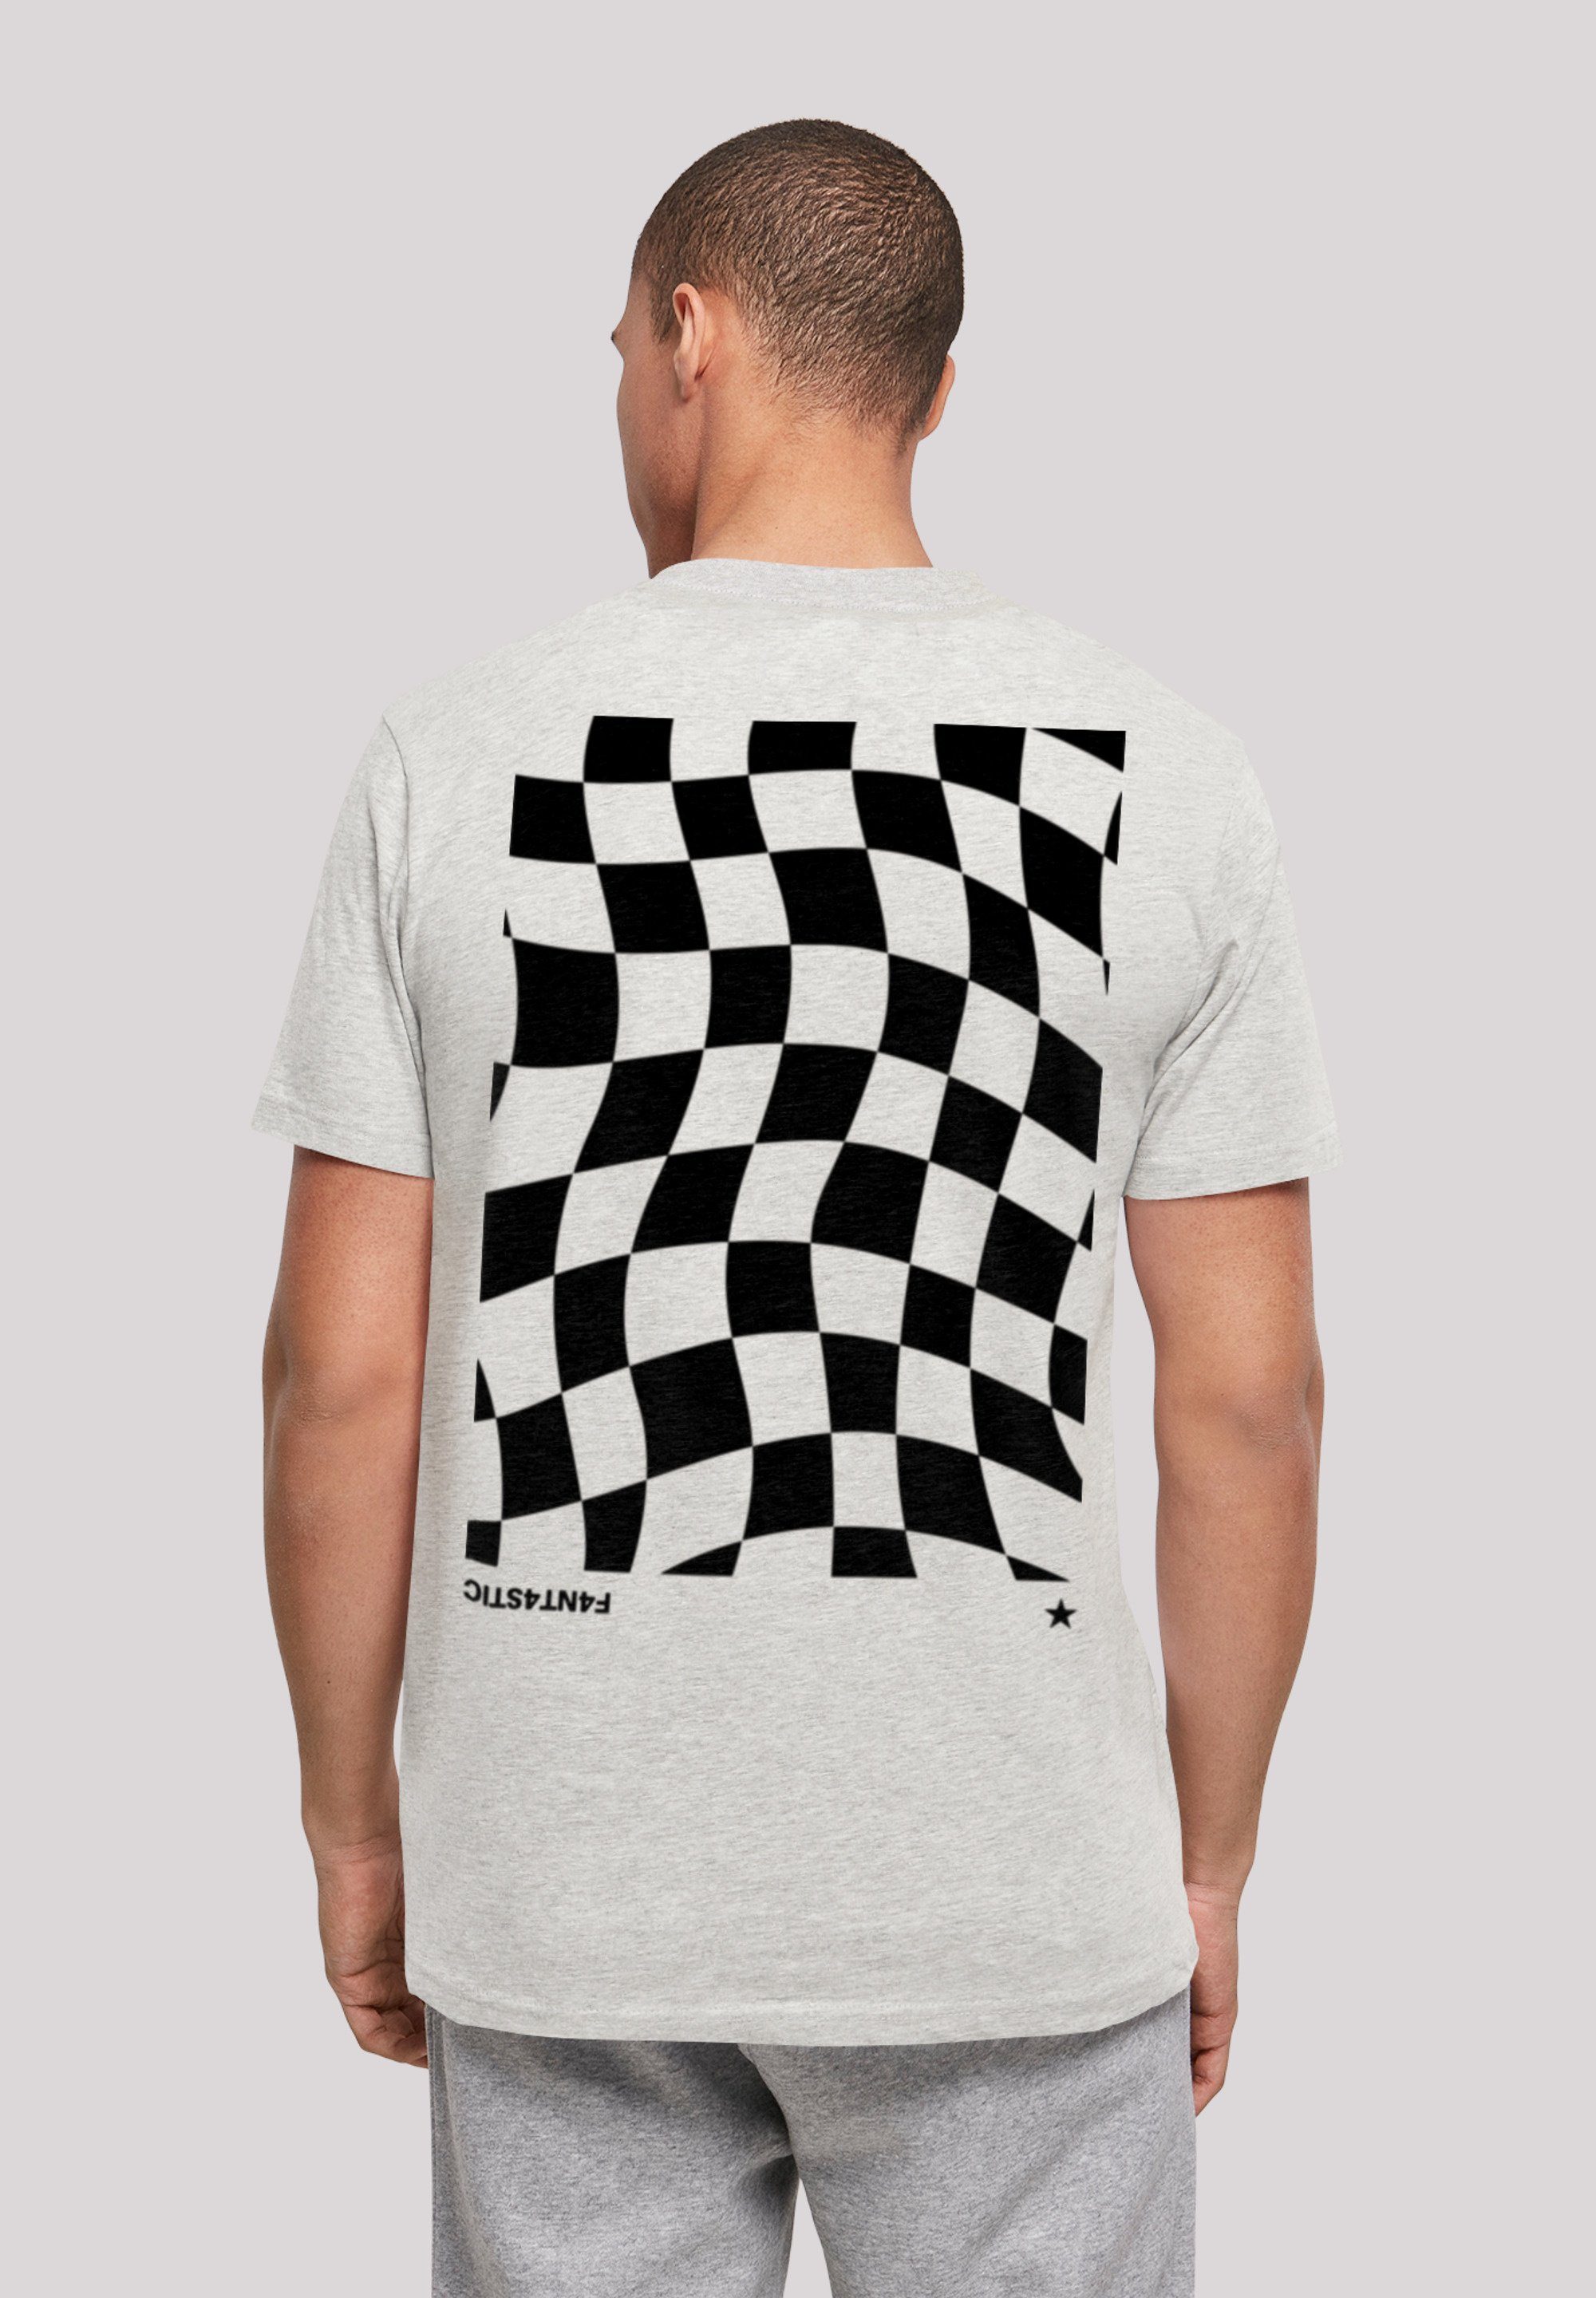 F4NT4STIC T-Shirt Schach hohem mit Muster Print, Wavy weicher Sehr Tragekomfort Baumwollstoff